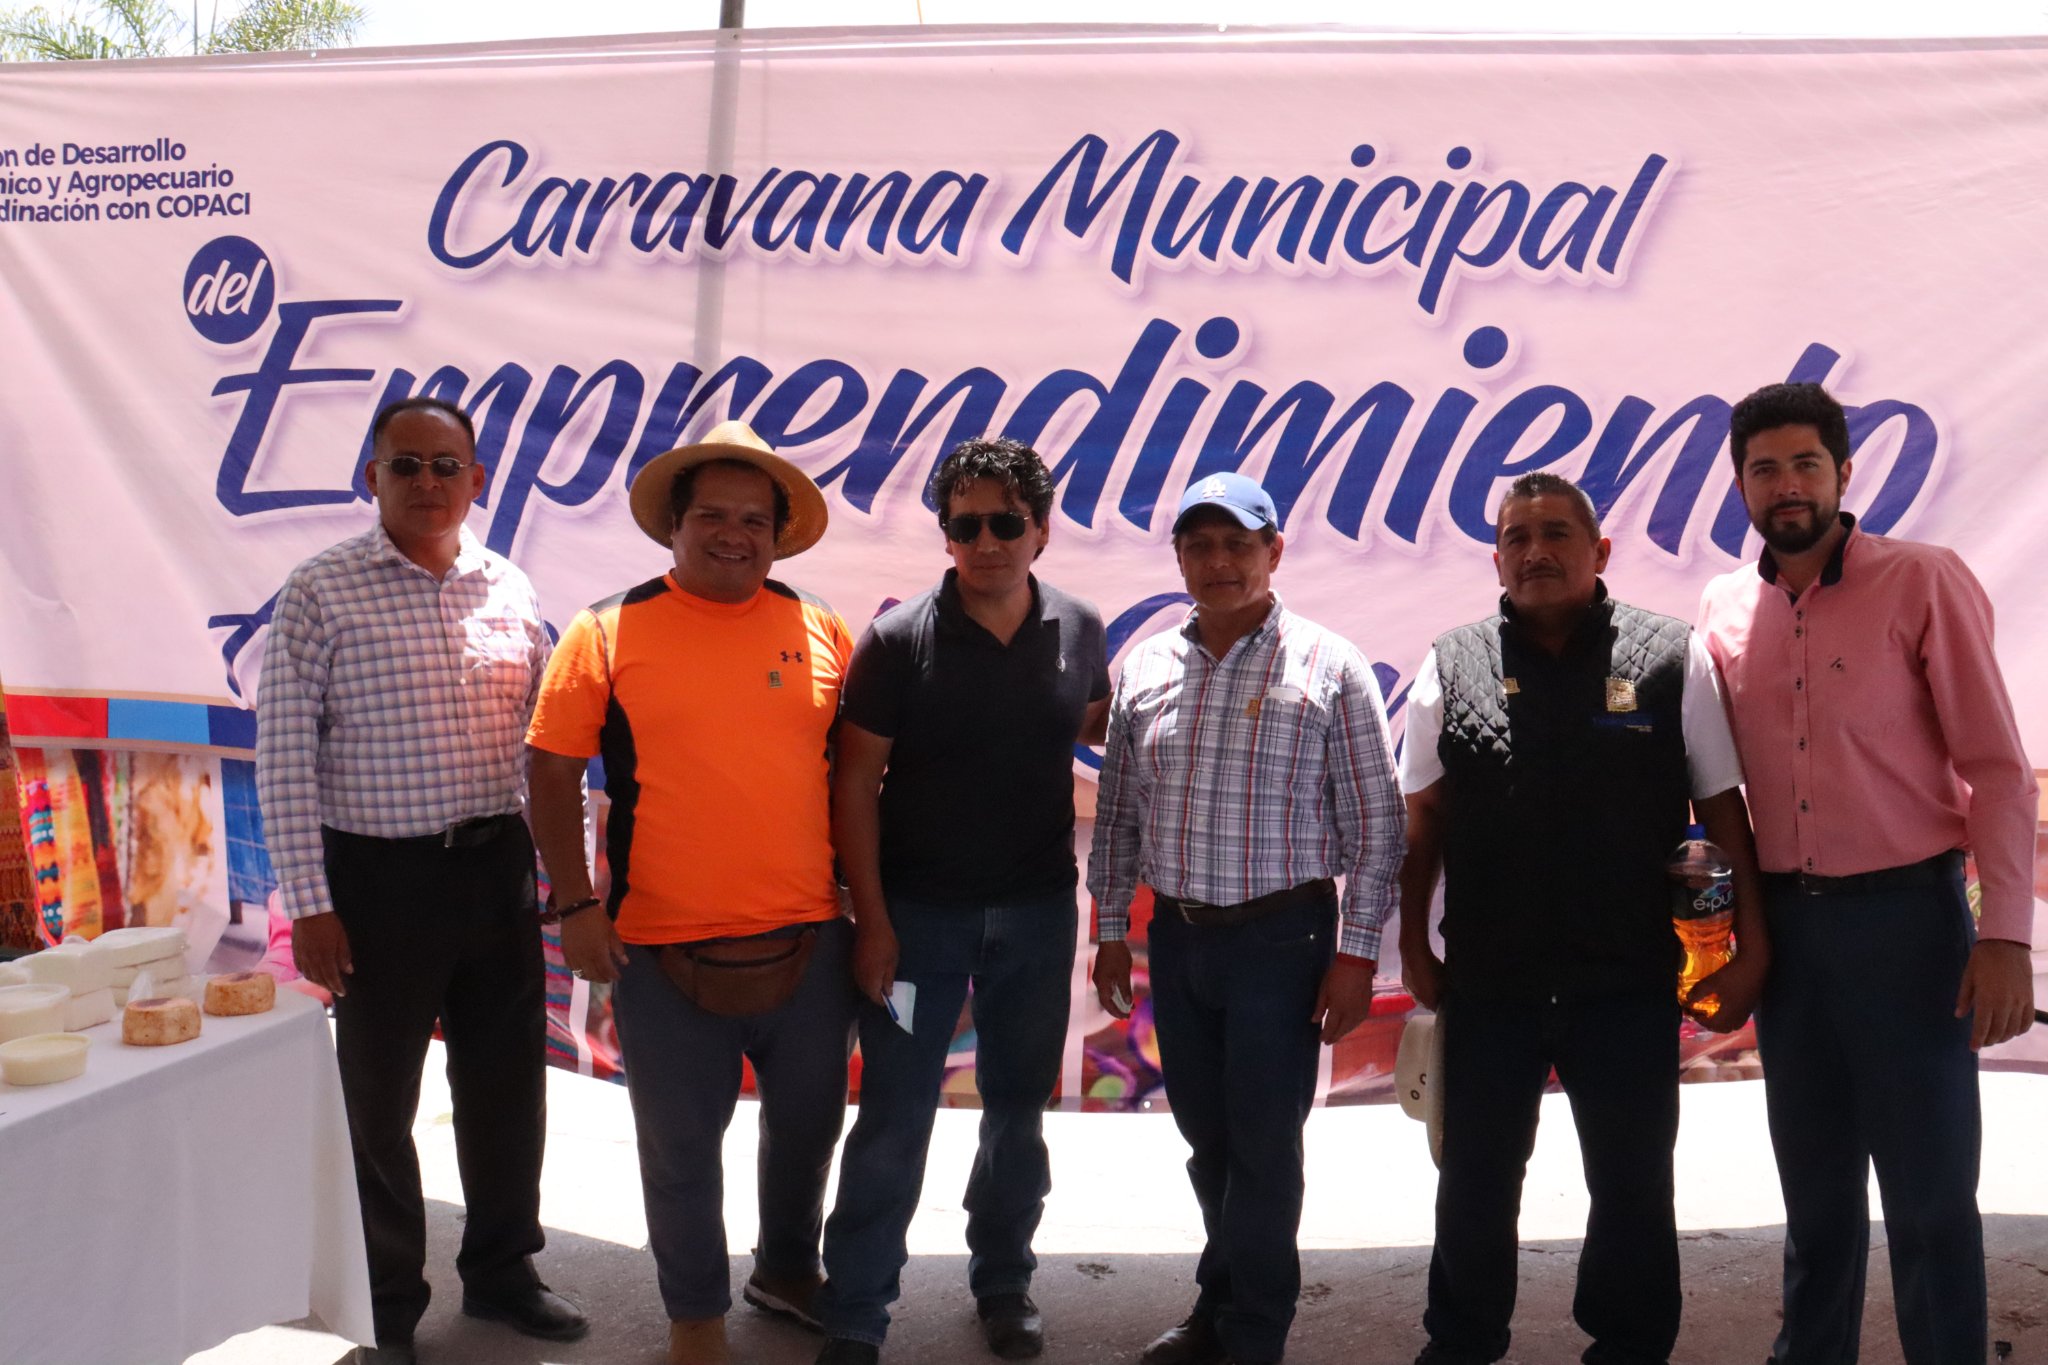 Caravana Municipal de Emprendimiento Artesanal y Comercial